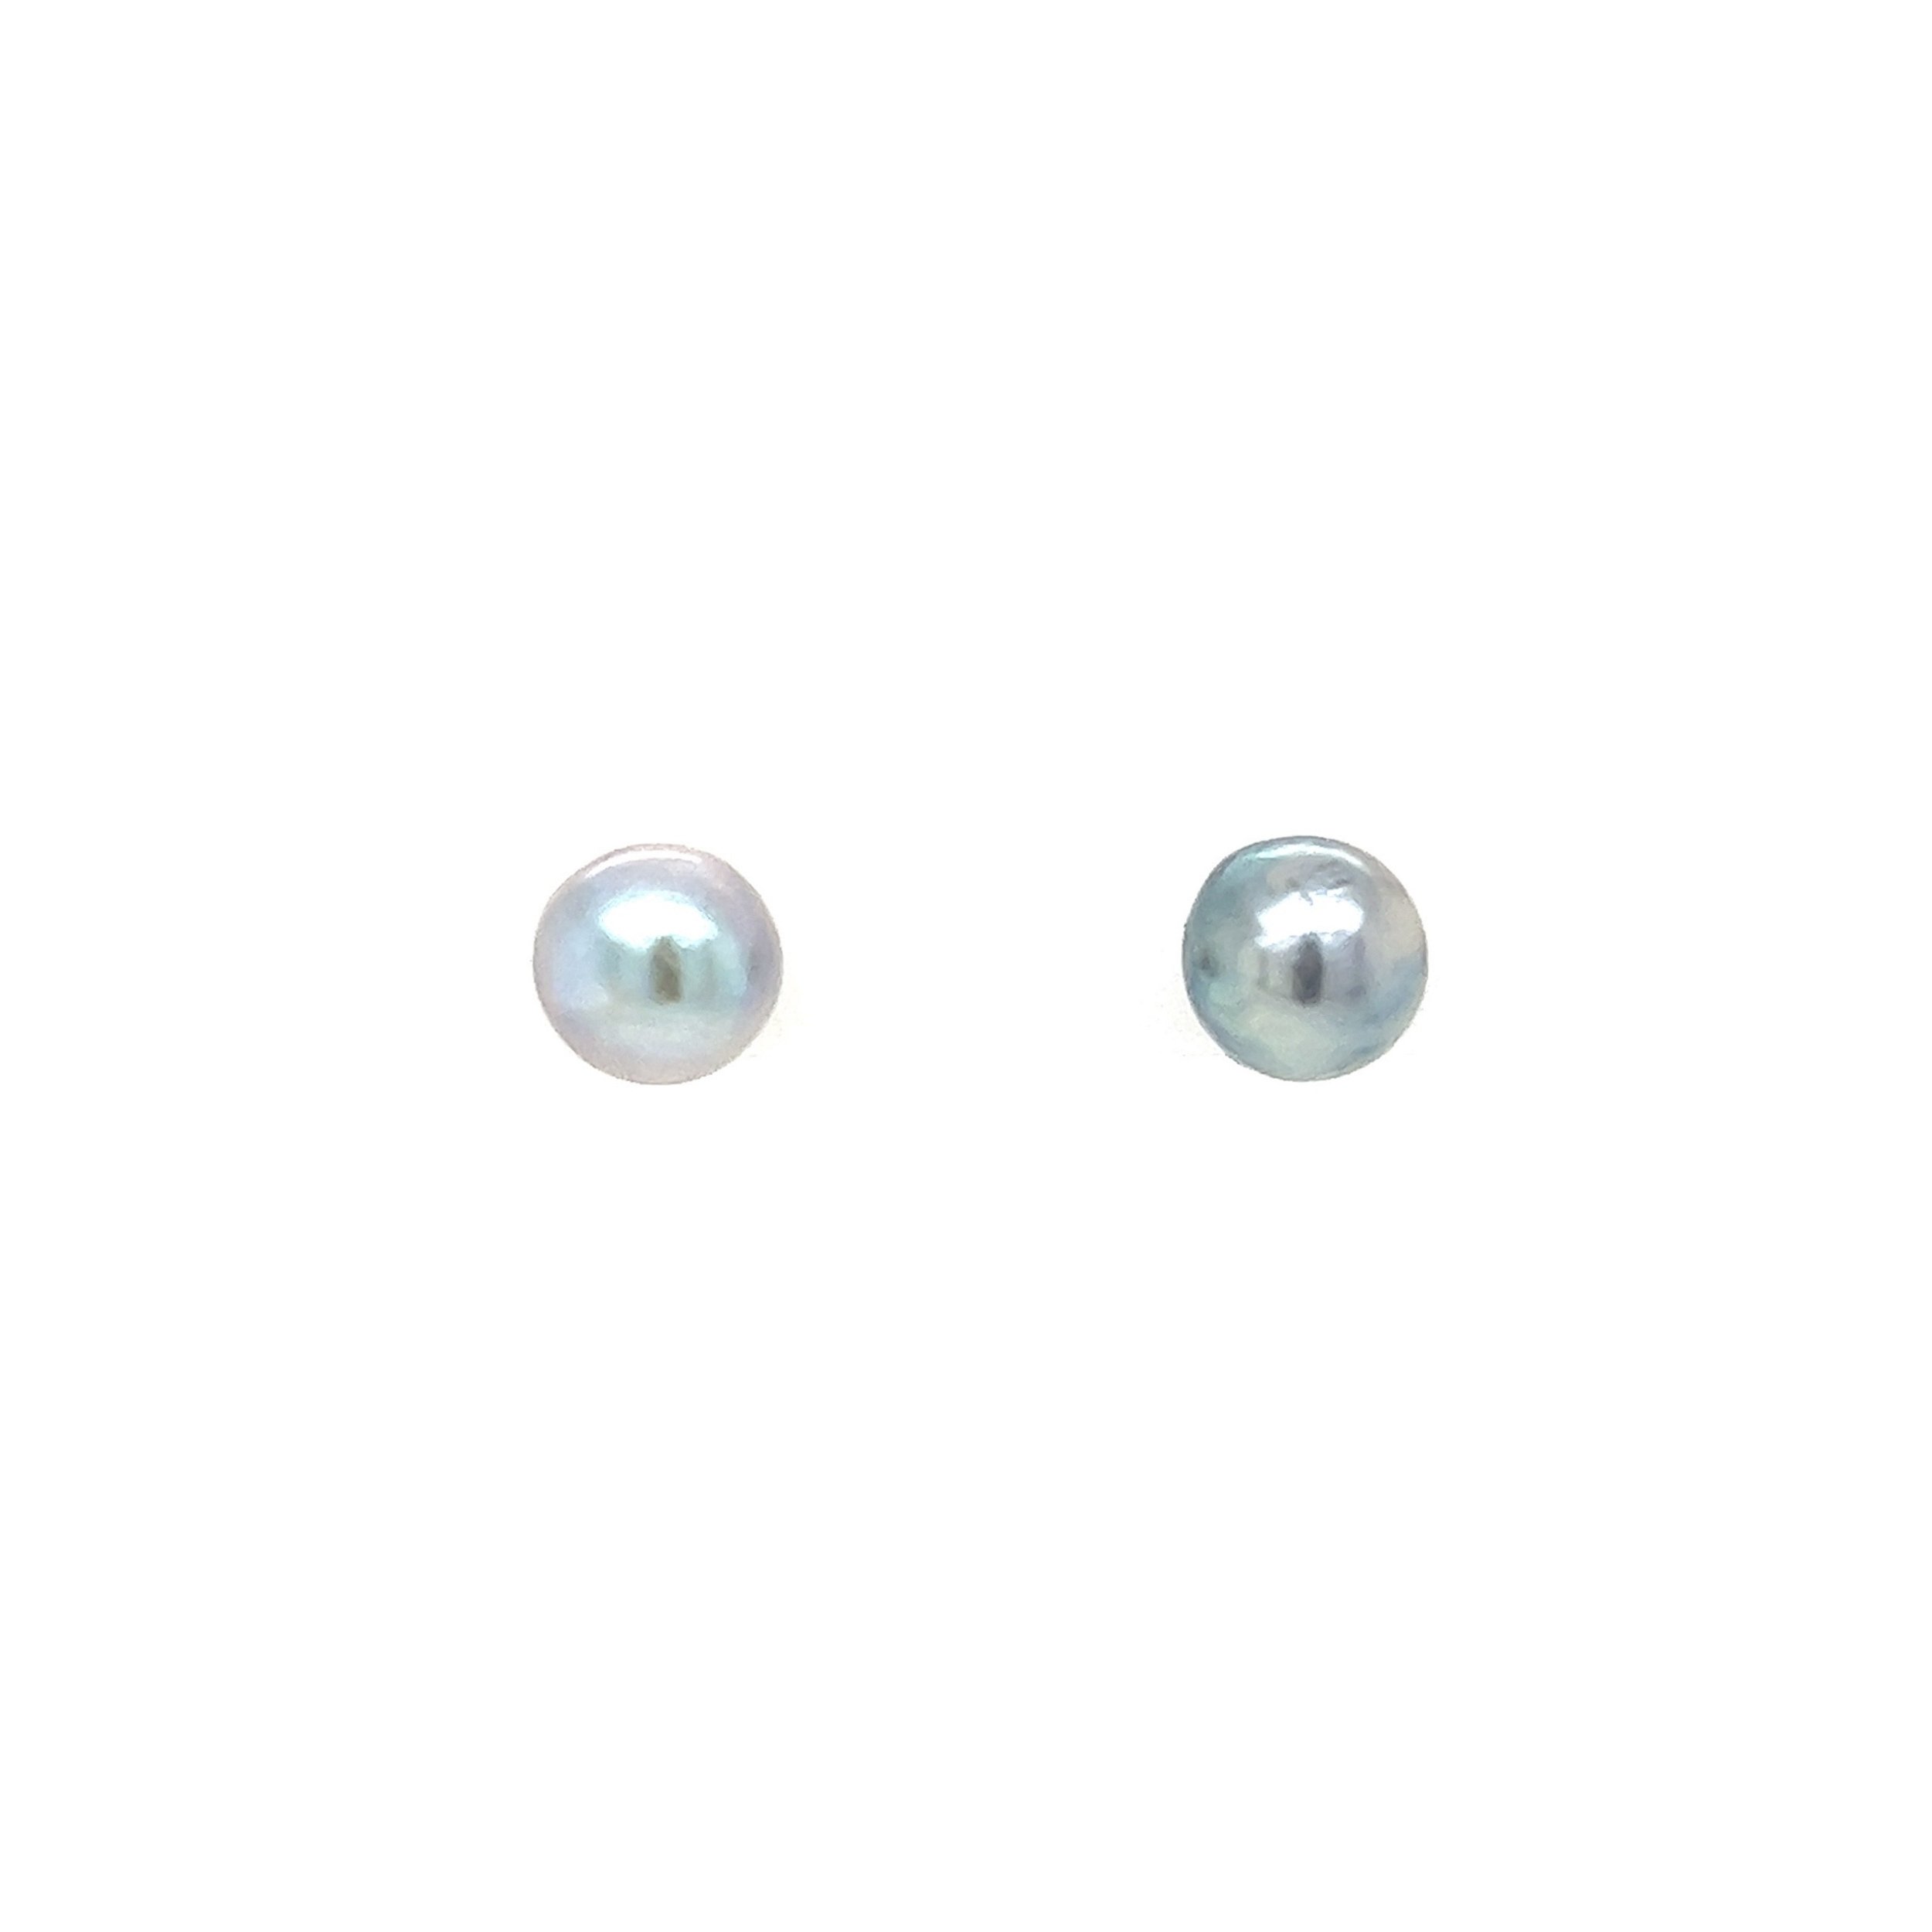 14K YG 6.5mm Light Gray Freshwater Pearl Stud Earrings 1.4g